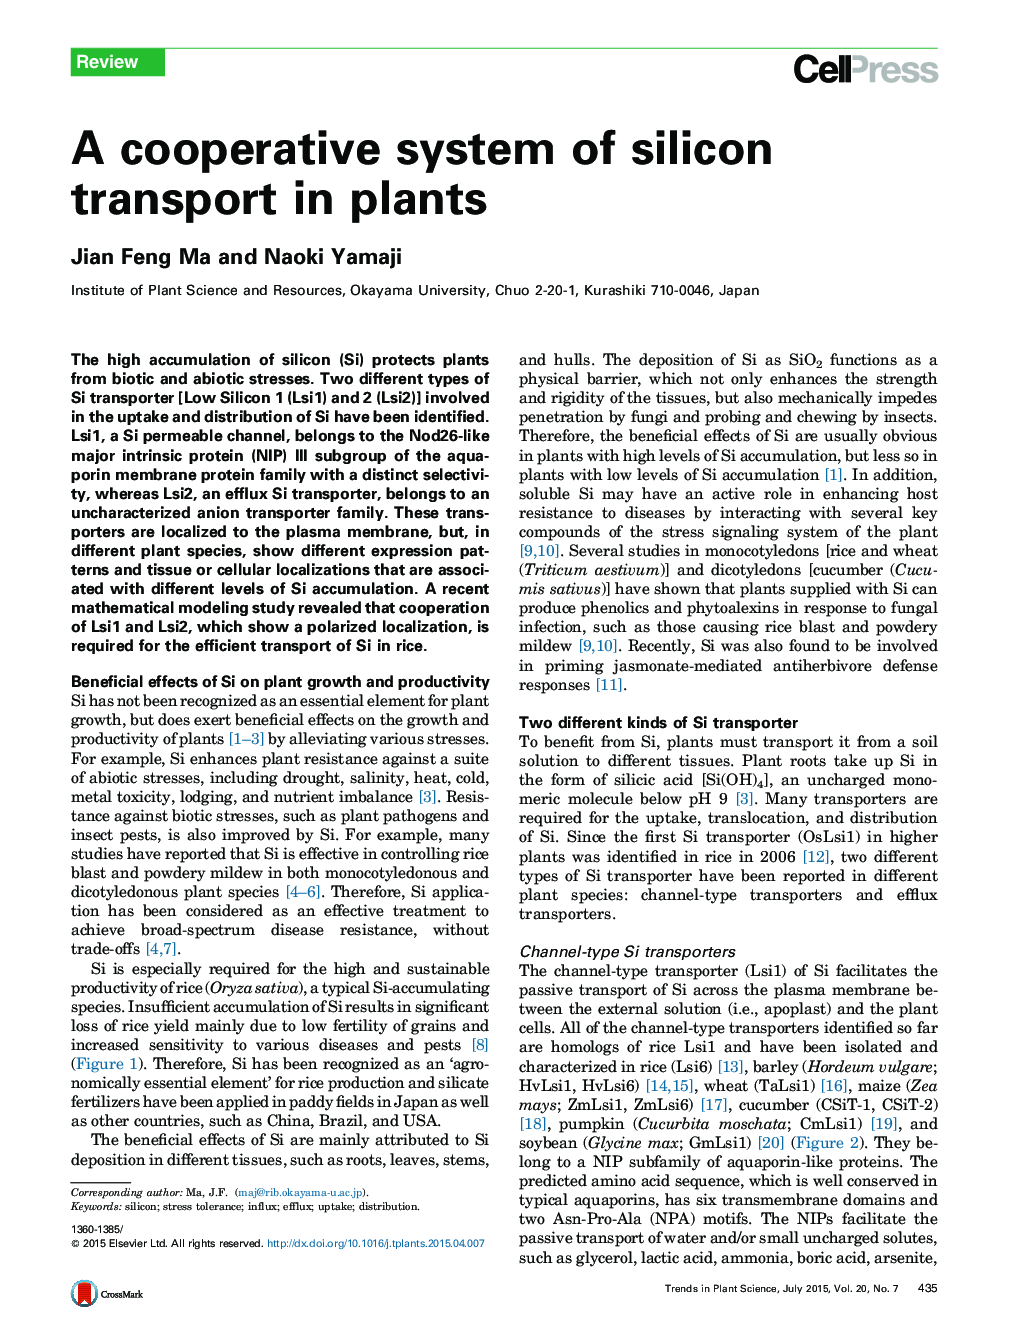 سیستم تعاونی انتقال سیلیکون در گیاهان 